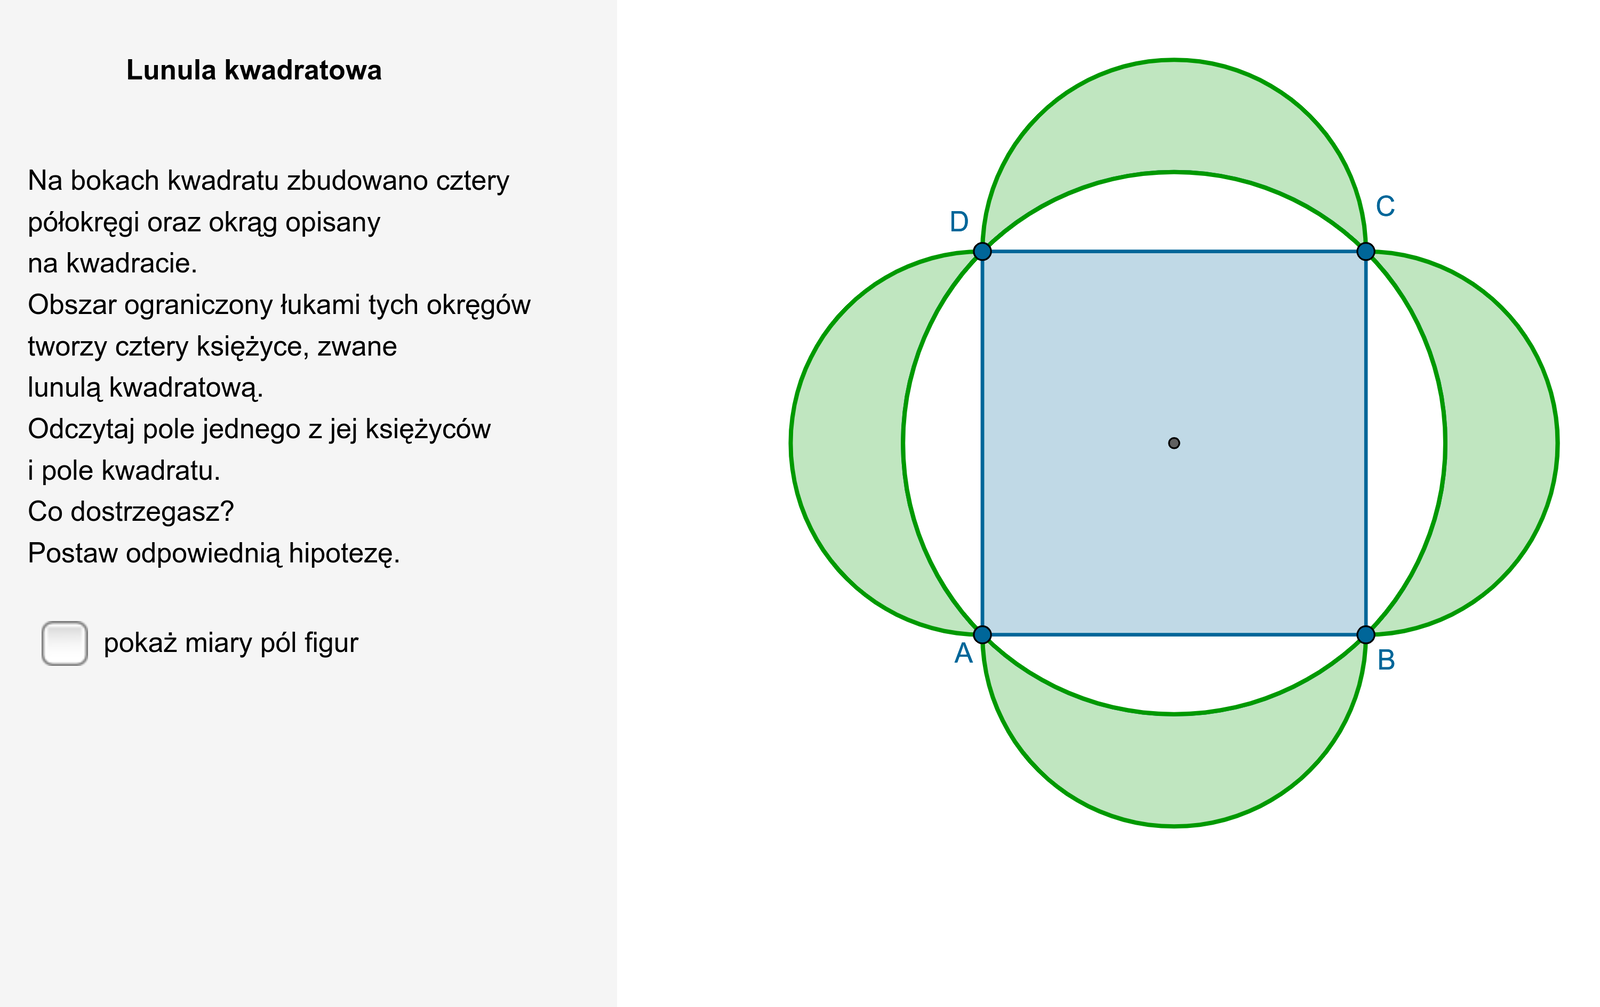 W aplecie przedstawiono rysunek lunuli kwadratowej. Na bokach kwadratu A B C D zbudowano cztery półokręgi o średnicy równej długości boku rozważanego kwadratu. Na kwadracie A B C D został również opisany okrąg. Obszar ograniczony łukami półokręgów oraz łukiem okręgu opisanego na kwadracie tworzy cztery księżyce zwane lunulą kwadratową. Obok rysunku znajduje się możliwość pokazania miar pól figur. Pole jednego księżyca lunuli jest równe 64, a pole kwadratu jest równe 256. Treść komentarza dotycząca miar pól figur jest następująca: Co dostrzegasz. Postaw odpowiednią hipotezę.